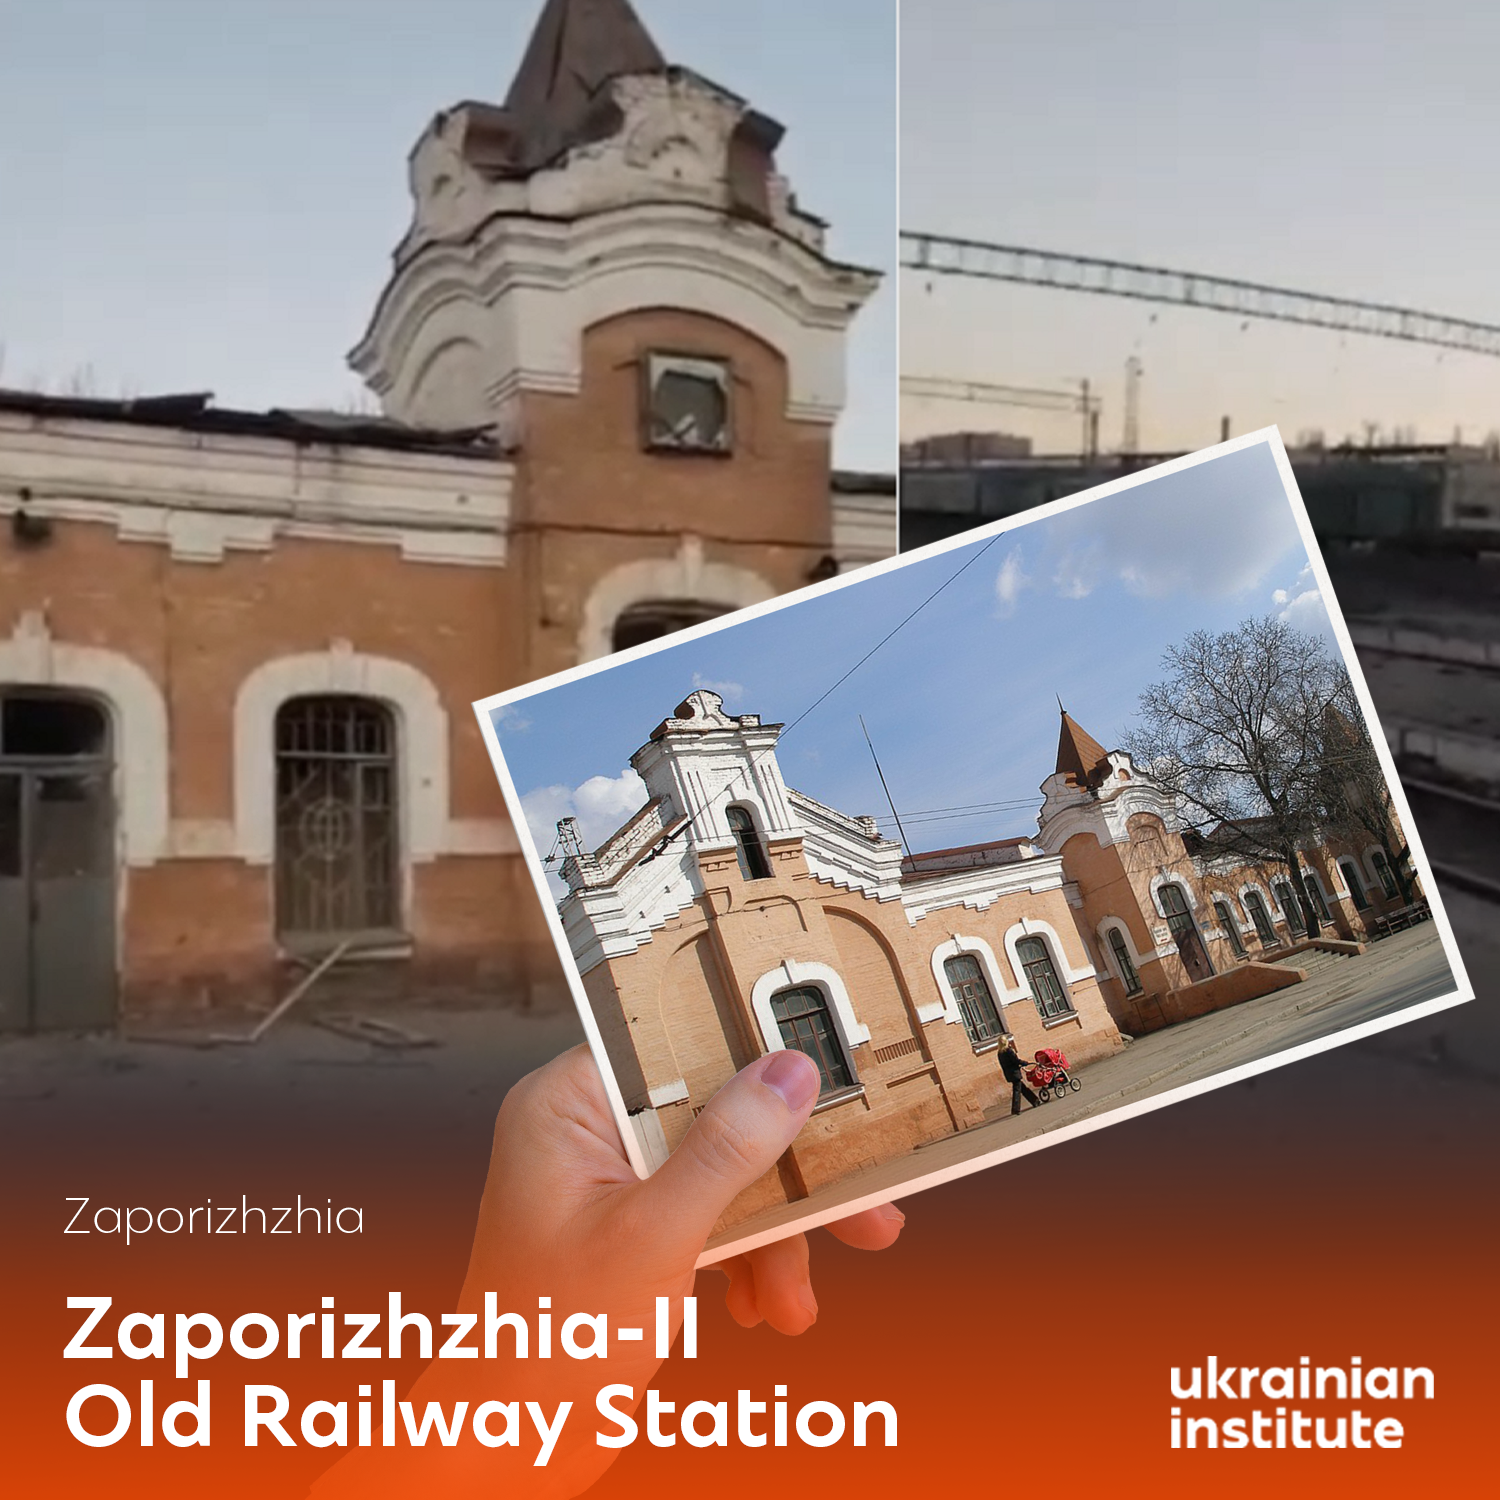 postcard_from_Ukraine_Zaporizhzhia_II_Old_Railway_Station_2